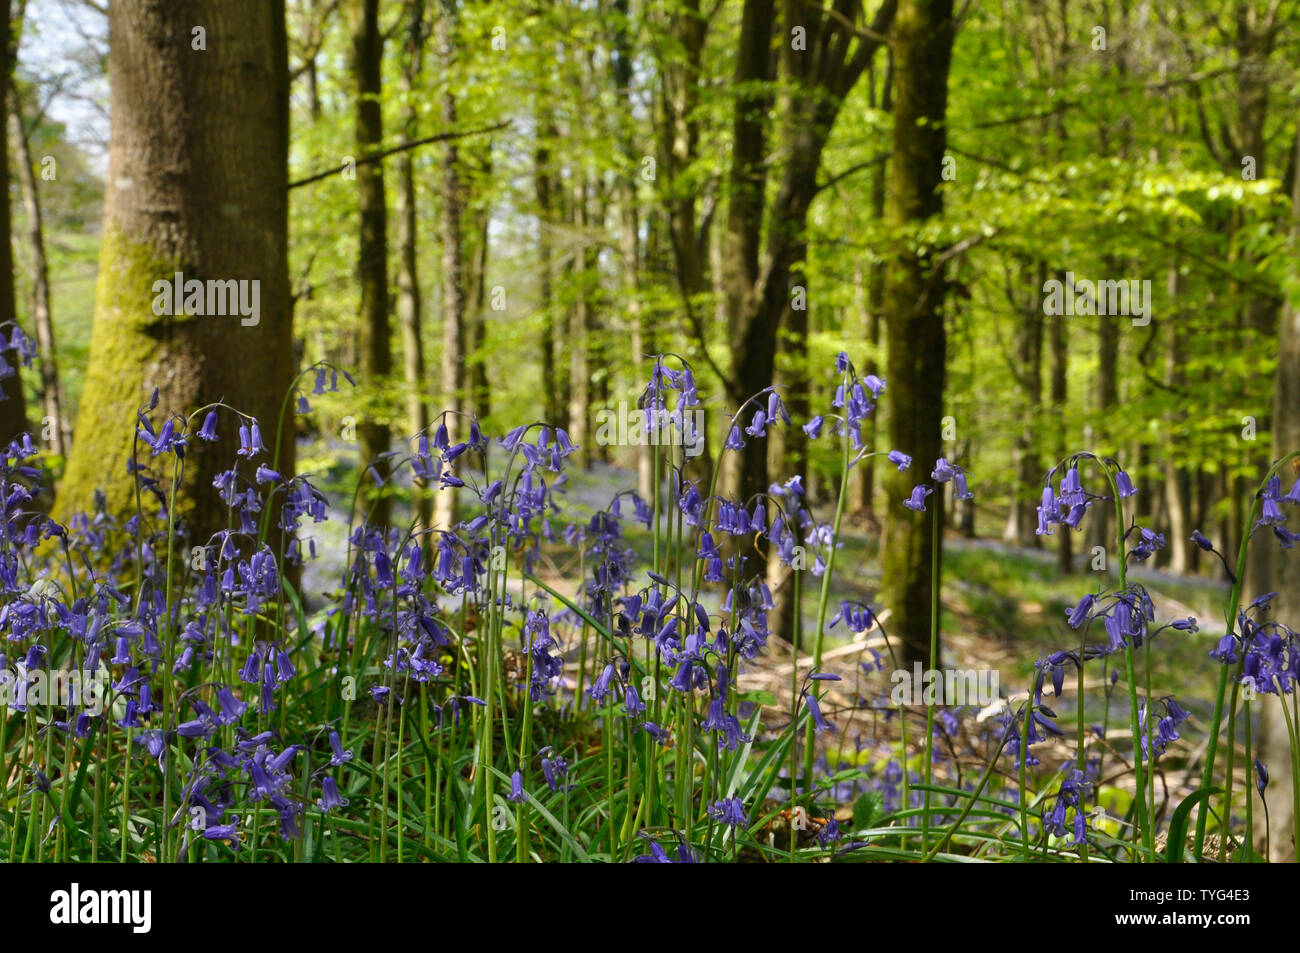 Bluebells sunlite in boschi di faggio convogliare un tranquillo,tranquilla sensazione di assistere il benessere generale. Somerset.UK Foto Stock